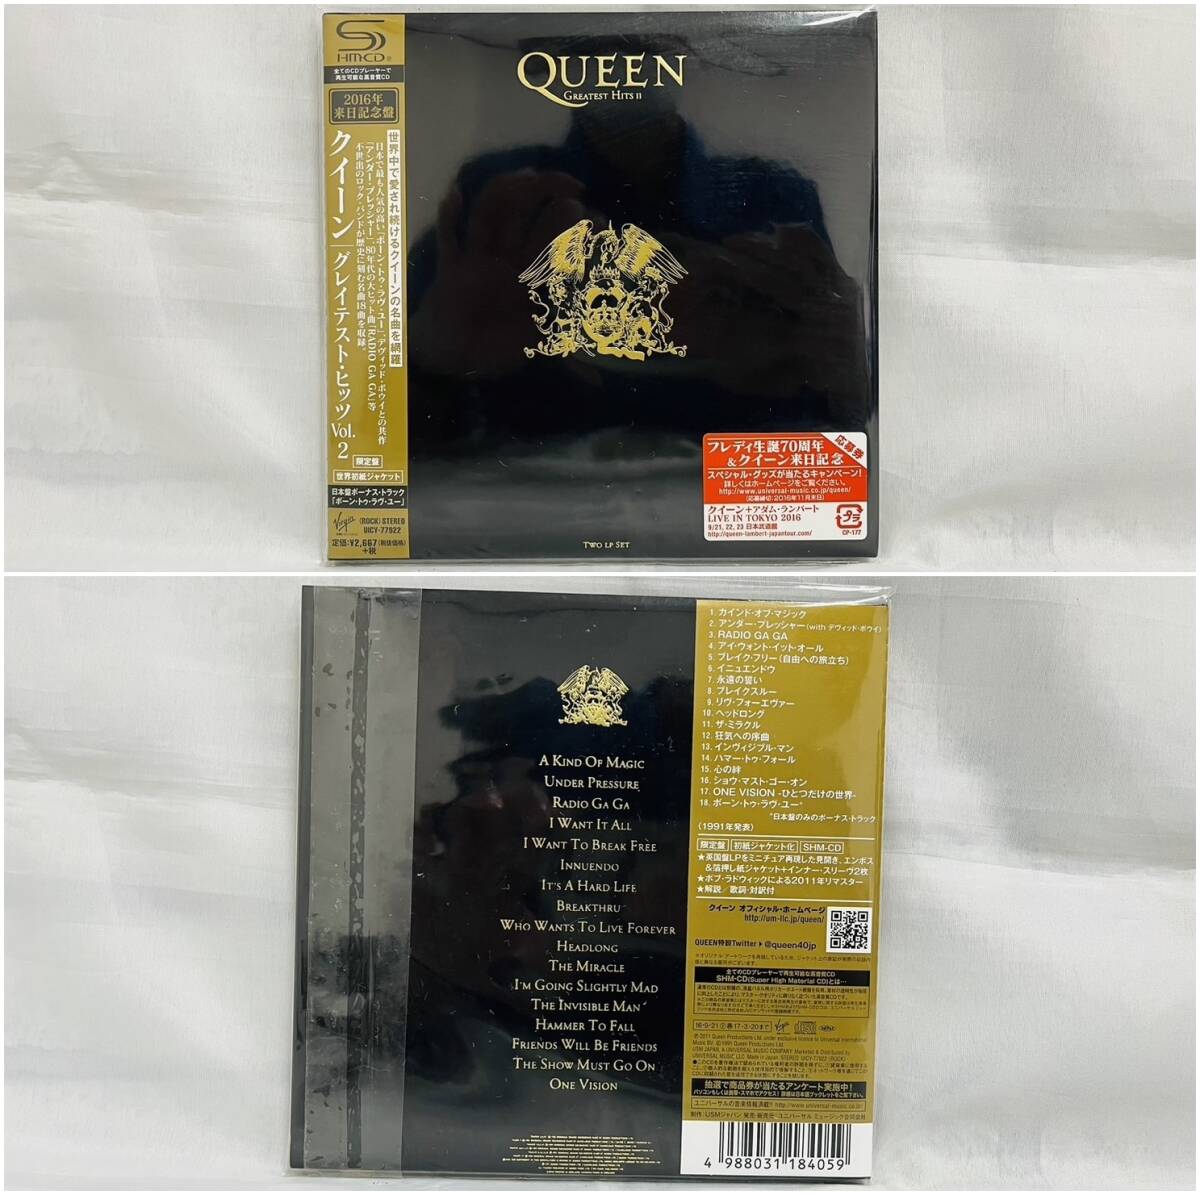 [240425-2T][ б/у товар ]{ Queen /CD}QUEEN/SHM-CD/ высококачественный звук / серый тест hitsu/ западная музыка блокировка / первый раз ограничение запись 